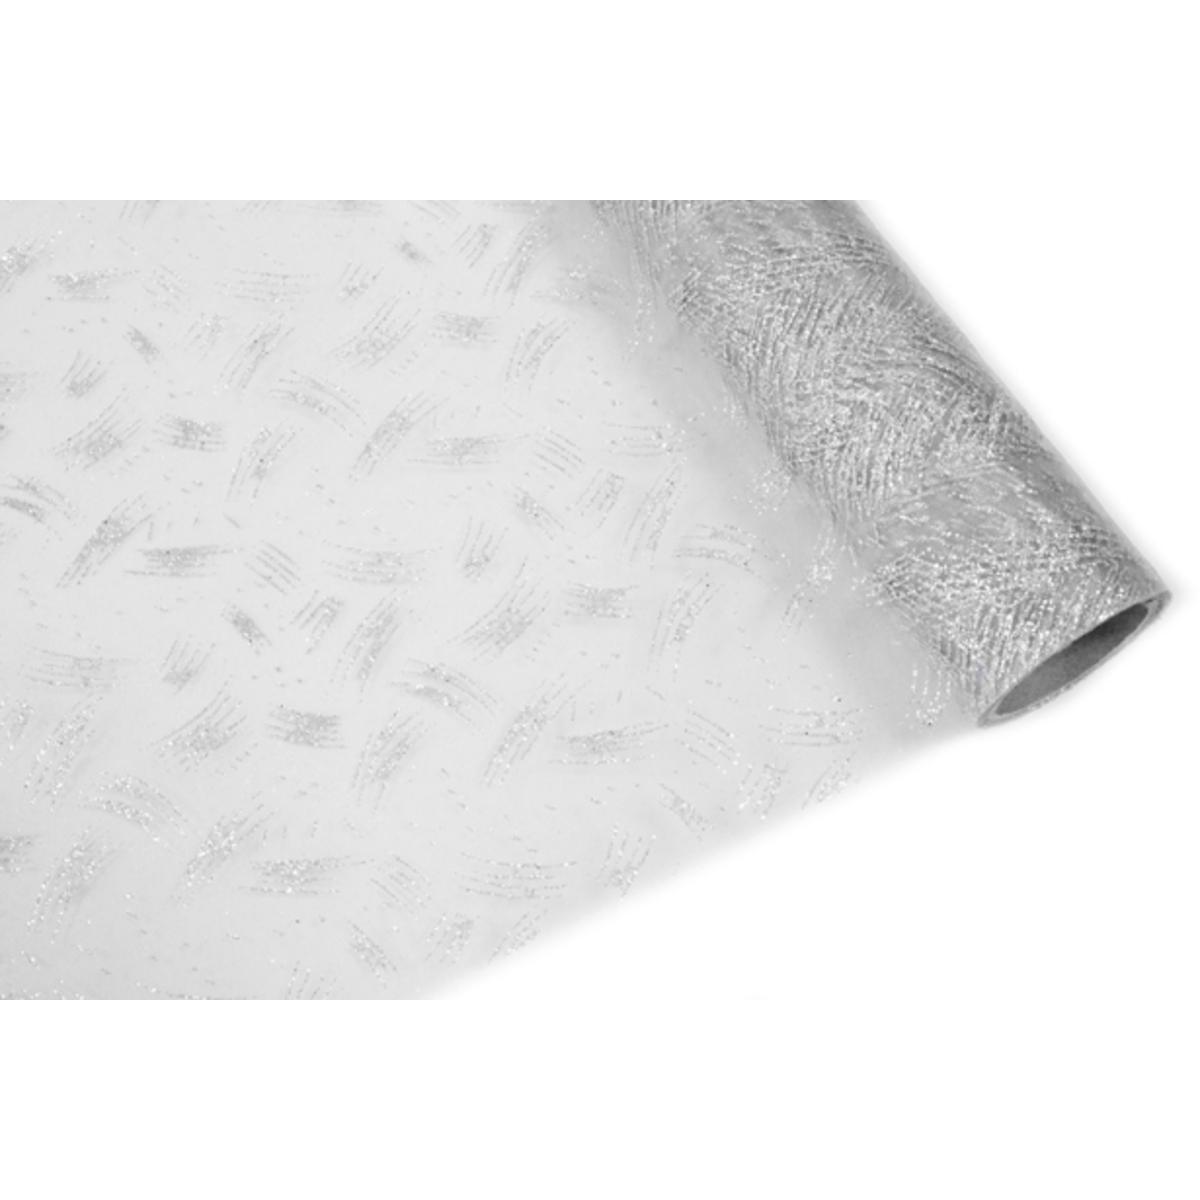 Chemin de table pailleté motifs traits - Organza - 28 cm x 5 m - Blanc et argent